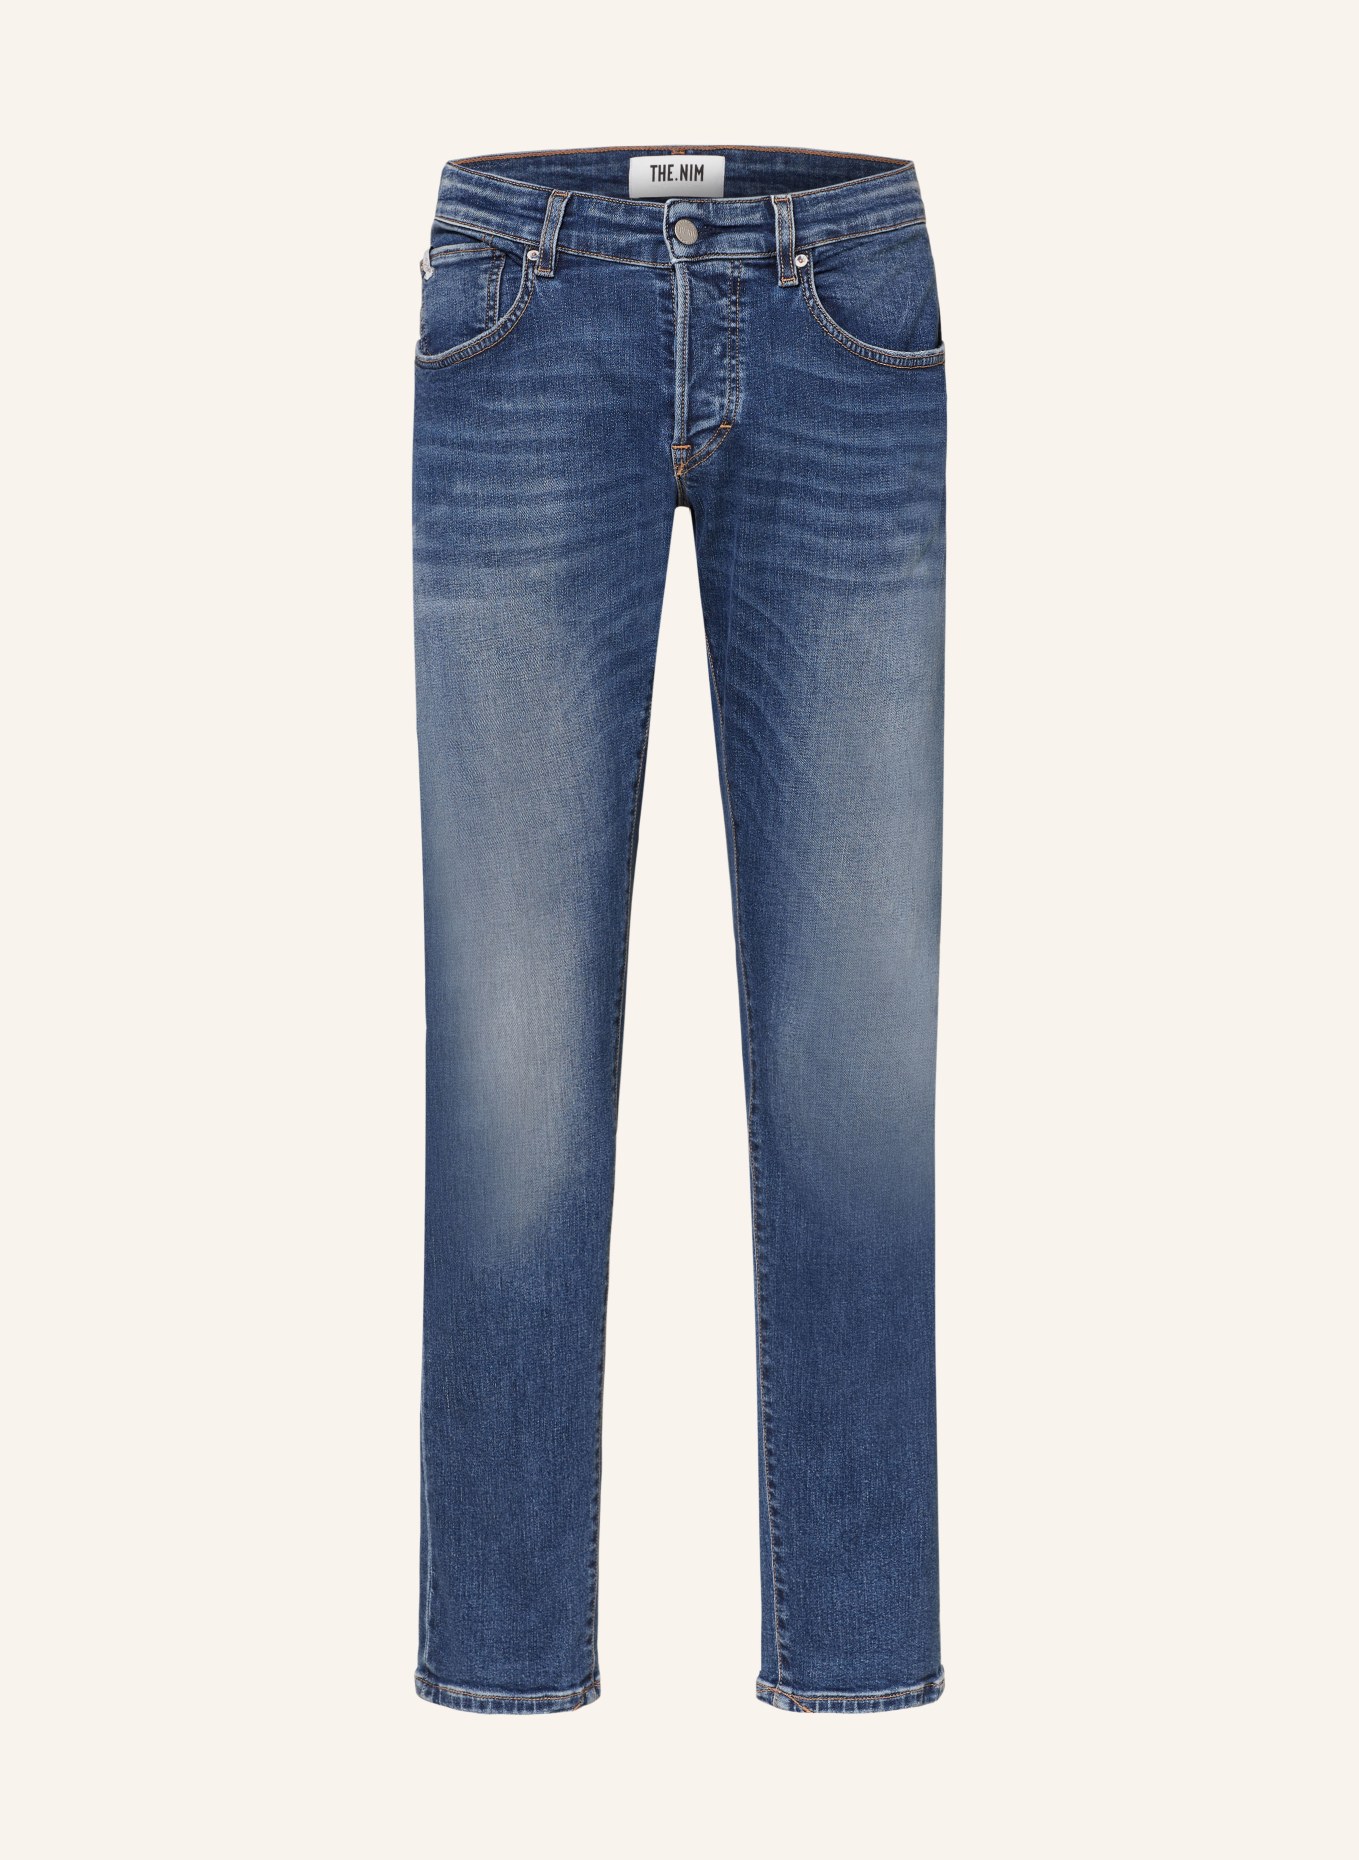 THE.NIM STANDARD Jeans DYLAN slim fit, Color: W432-MDM MEDIUM (Image 1)